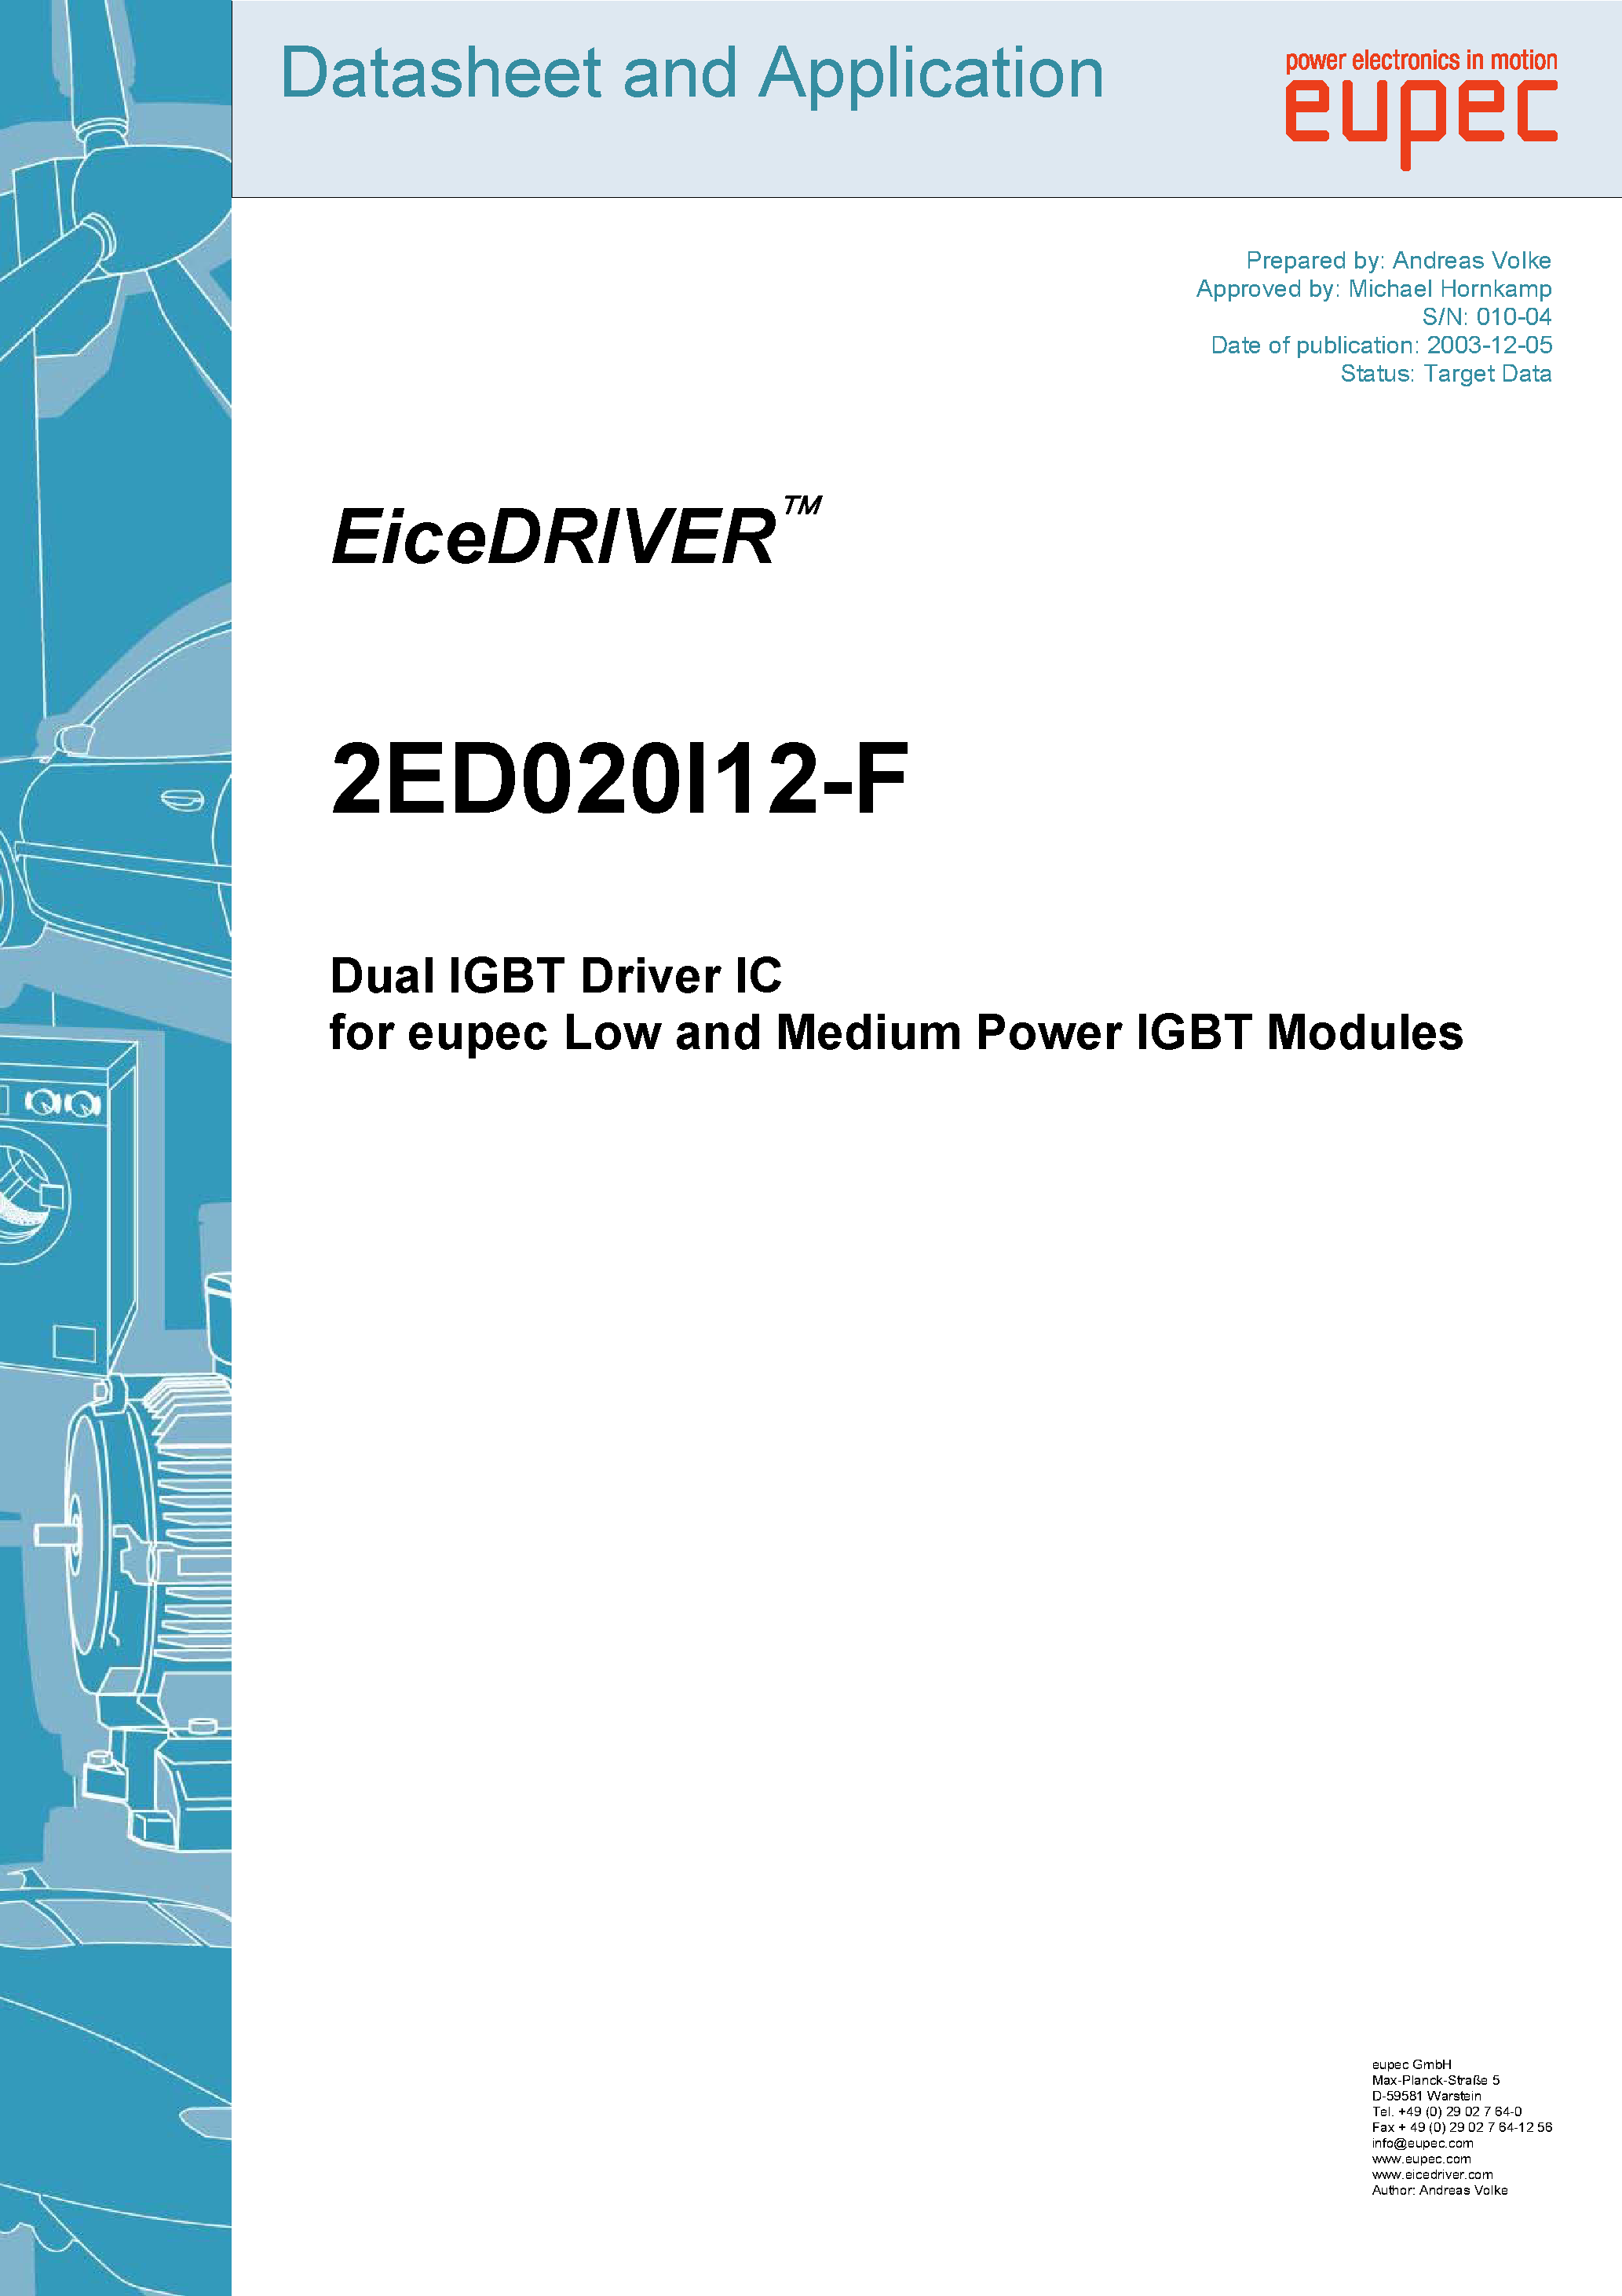 Даташит 2ED020I12-F - Dual IGBT Driver IC страница 1